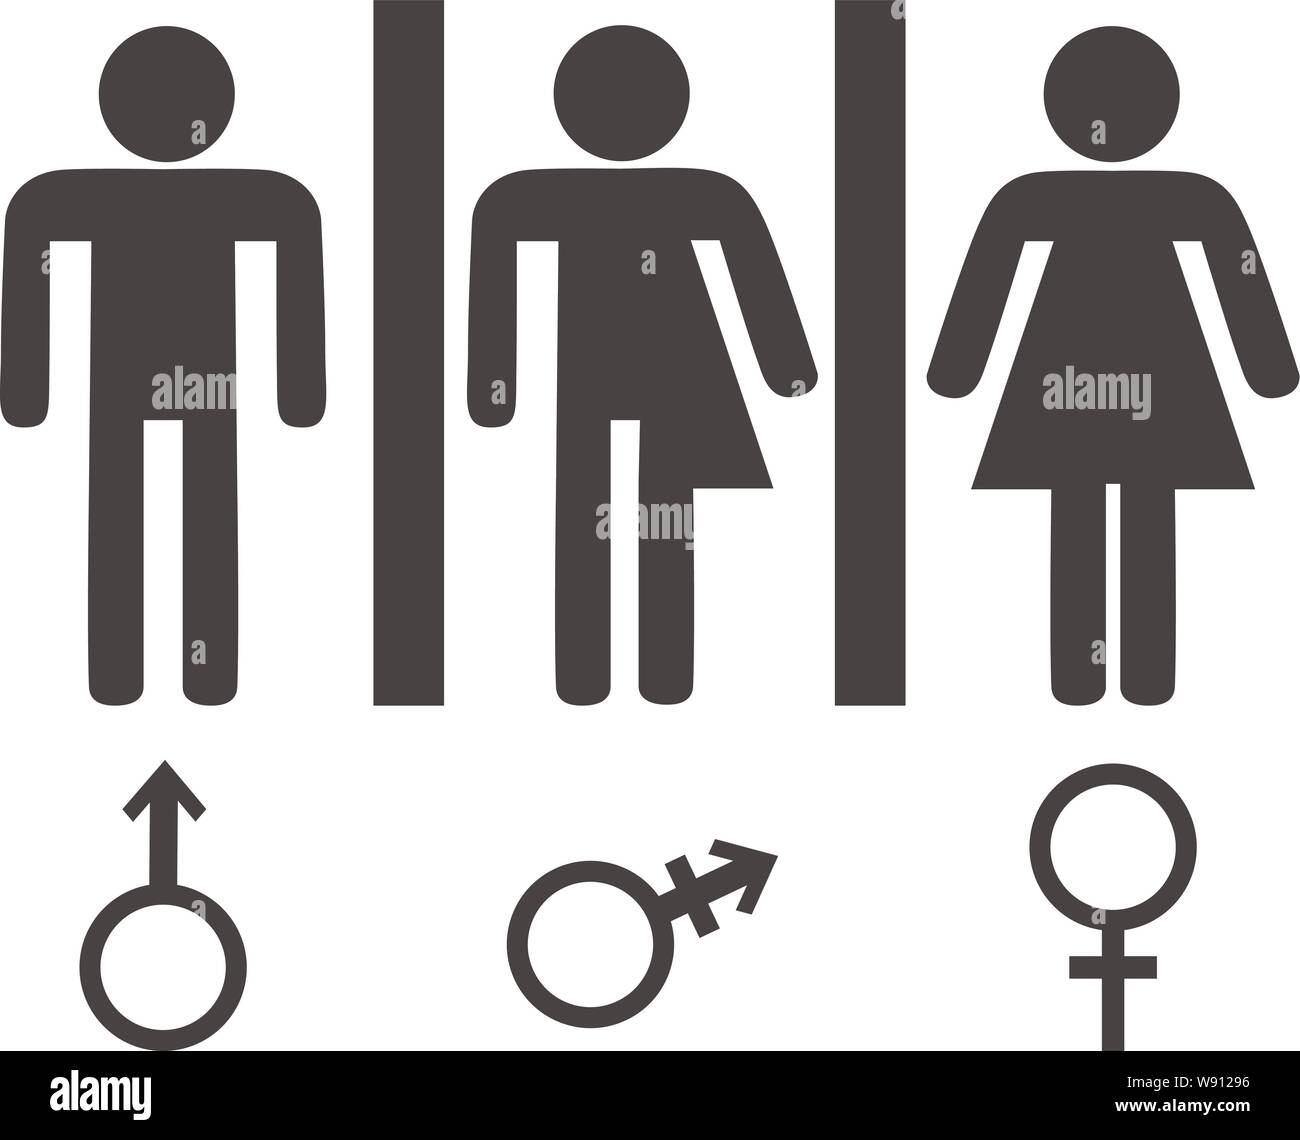 Frau und für symbol mann Gender